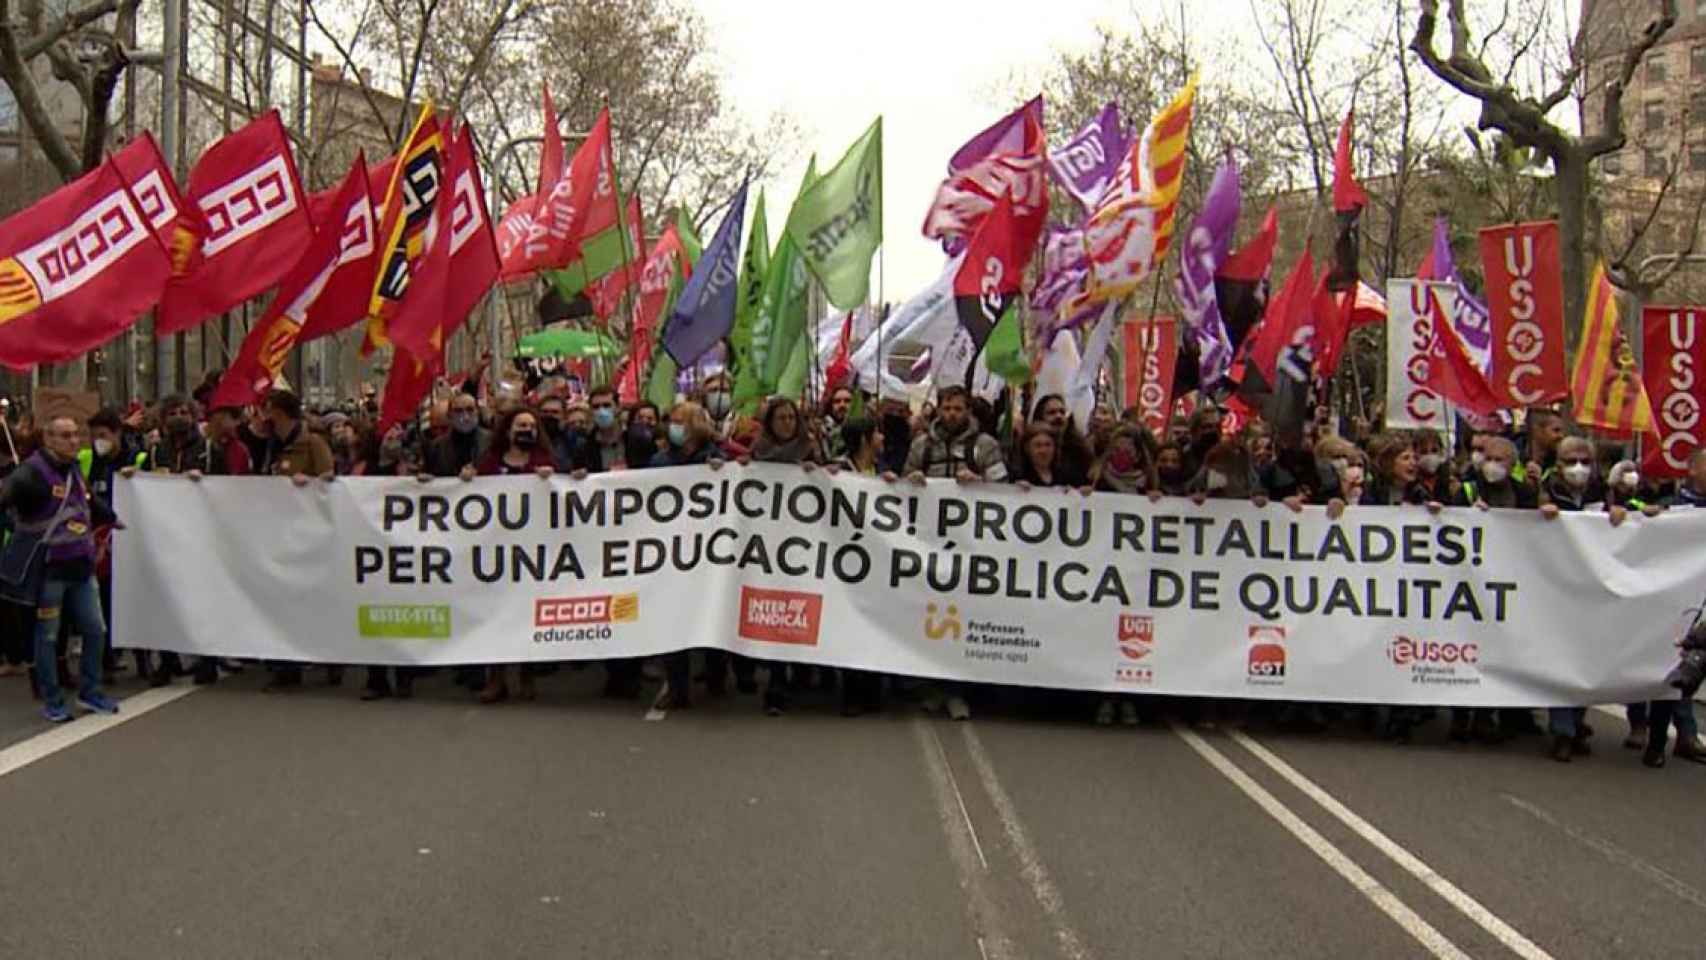 Miles de profesores se manifiestan pidiendo dimisión del exconsejero de Educación Josep González Cambray